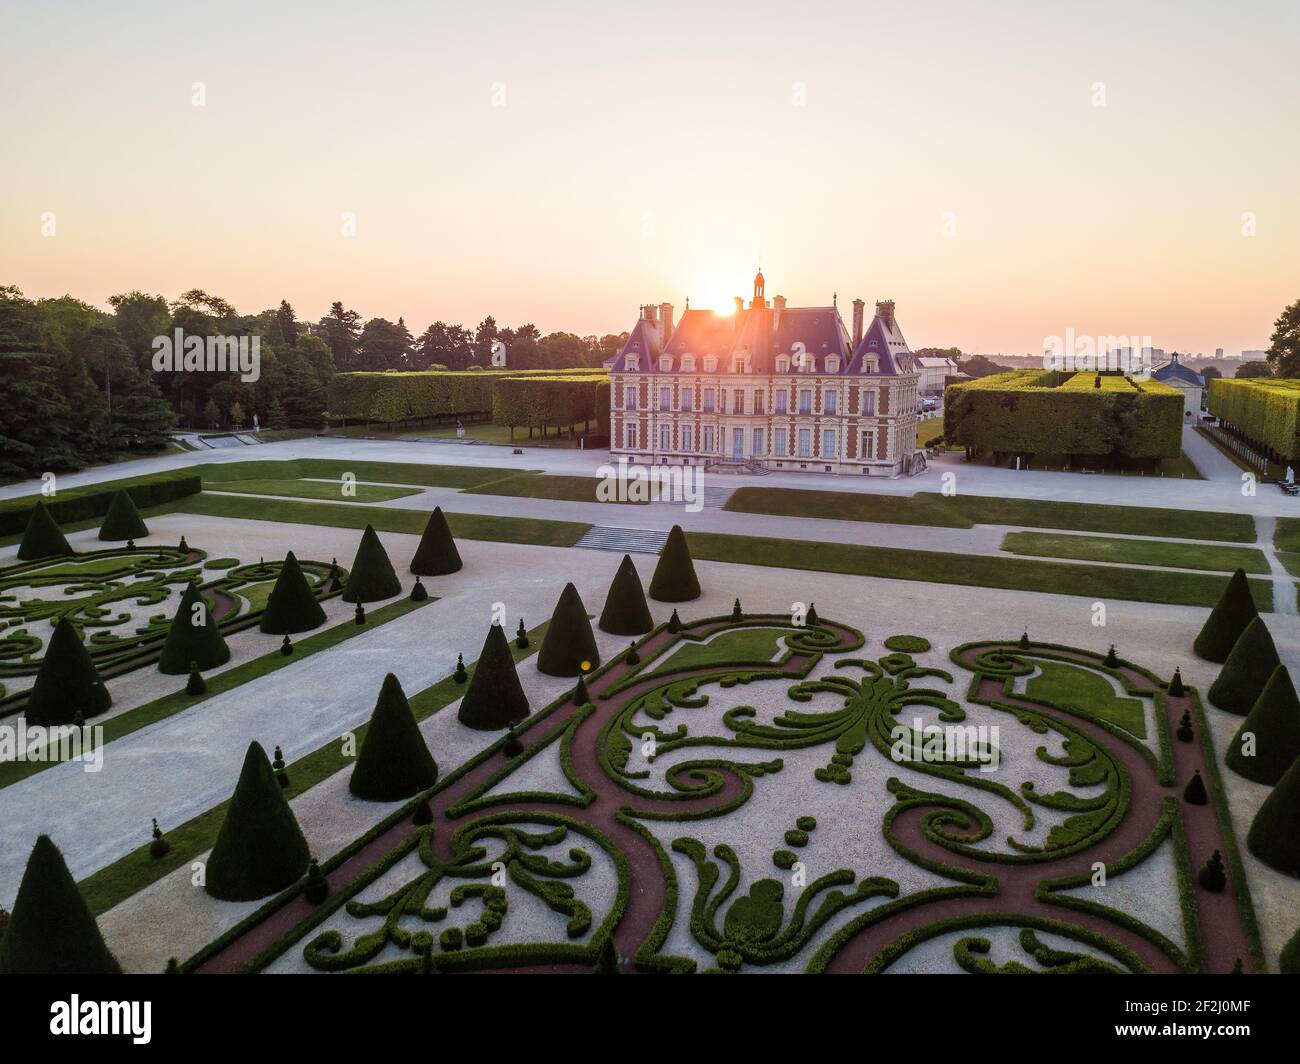 129 fotos de stock e banco de imagens de Chateau De Sceaux - Getty Images